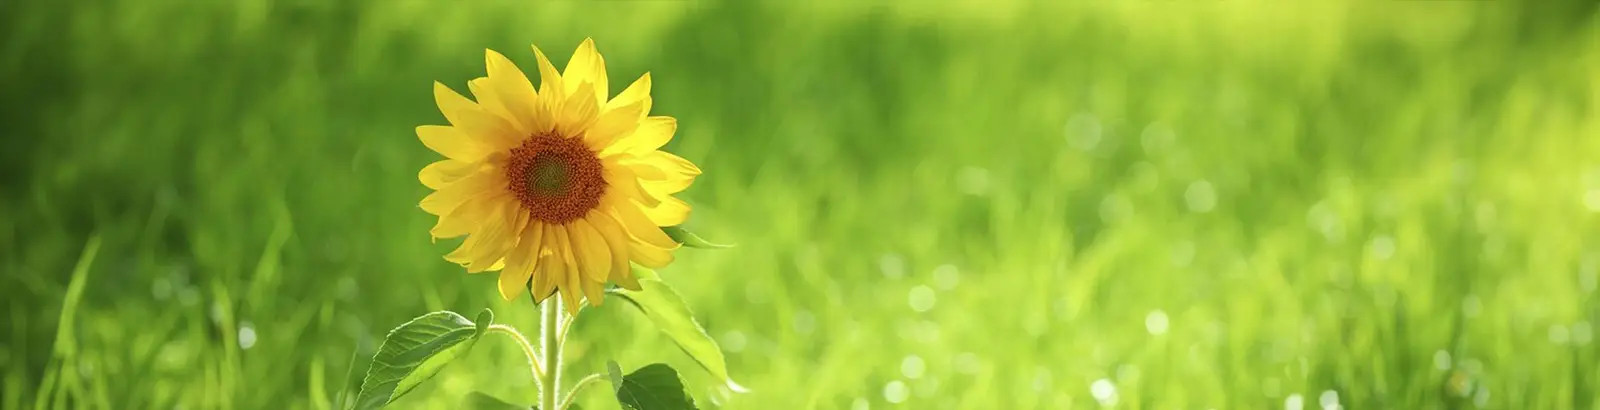 Fotografie einer Sonnenblume vor einer sattgrünen Wiese.